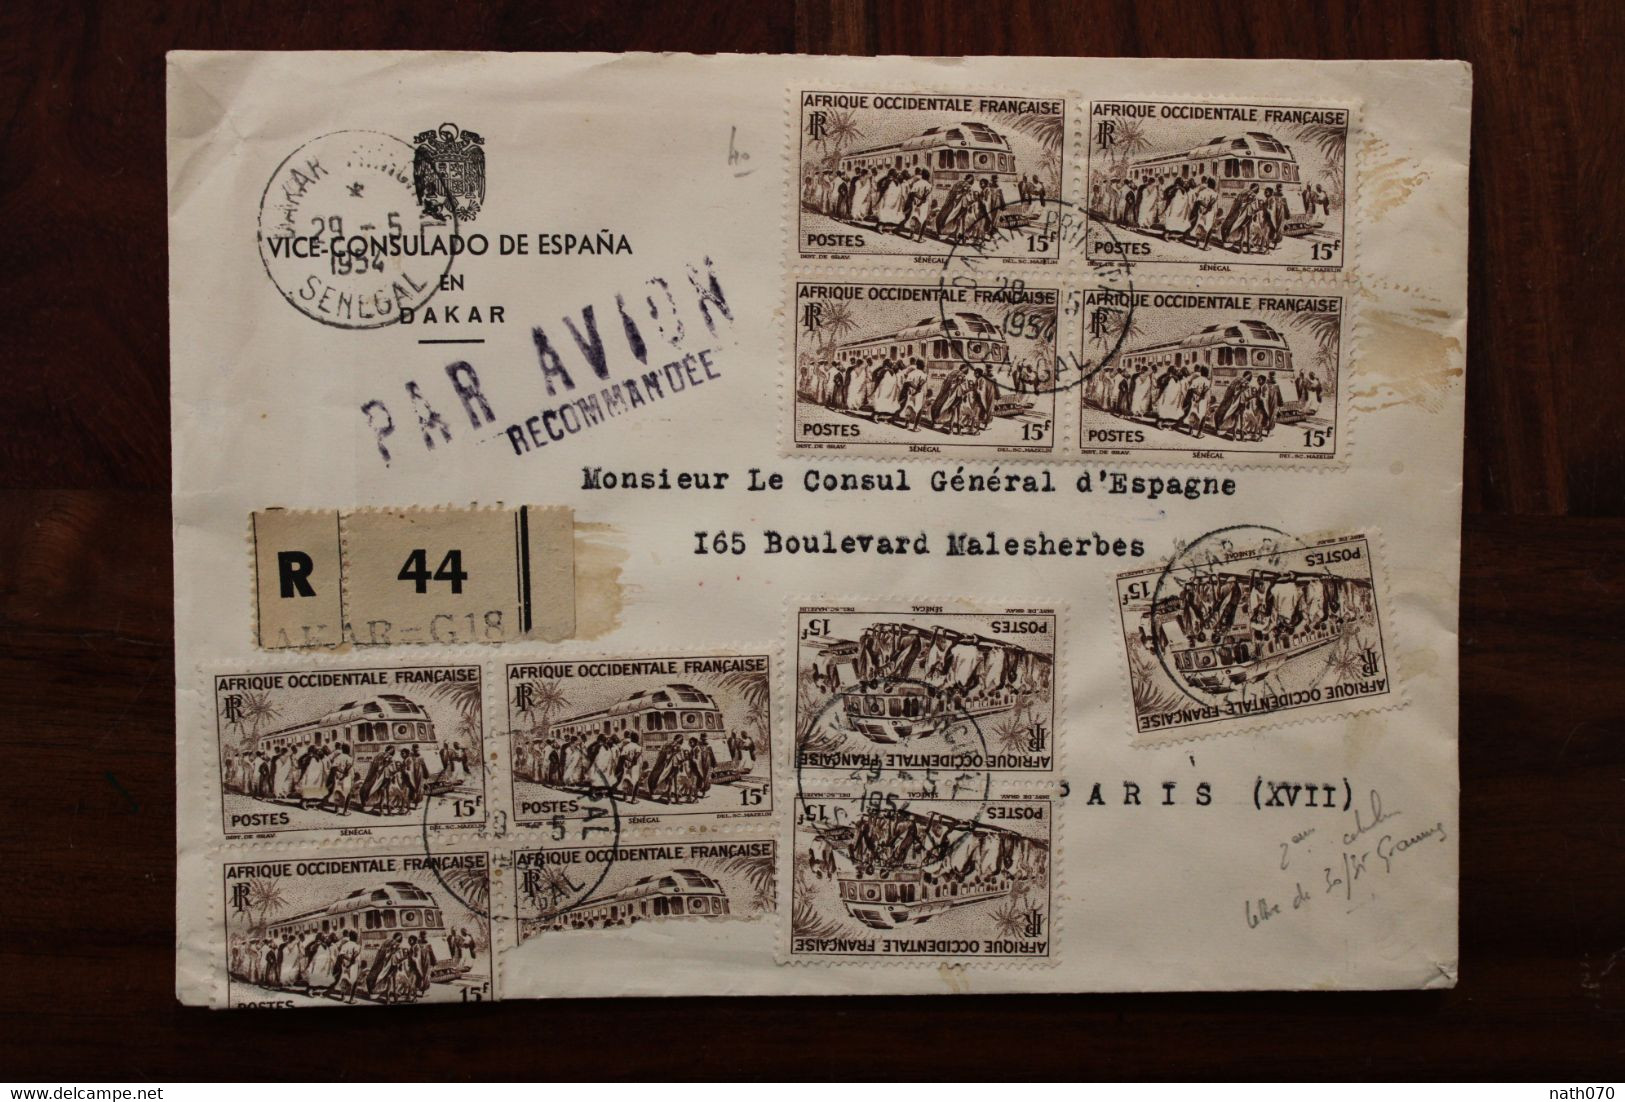 1954 SENEGAL France Enveloppe Consulado Espana Spain Espagne Cover Air Mail Colonies AOF Recommandé Registered R - Cartas & Documentos